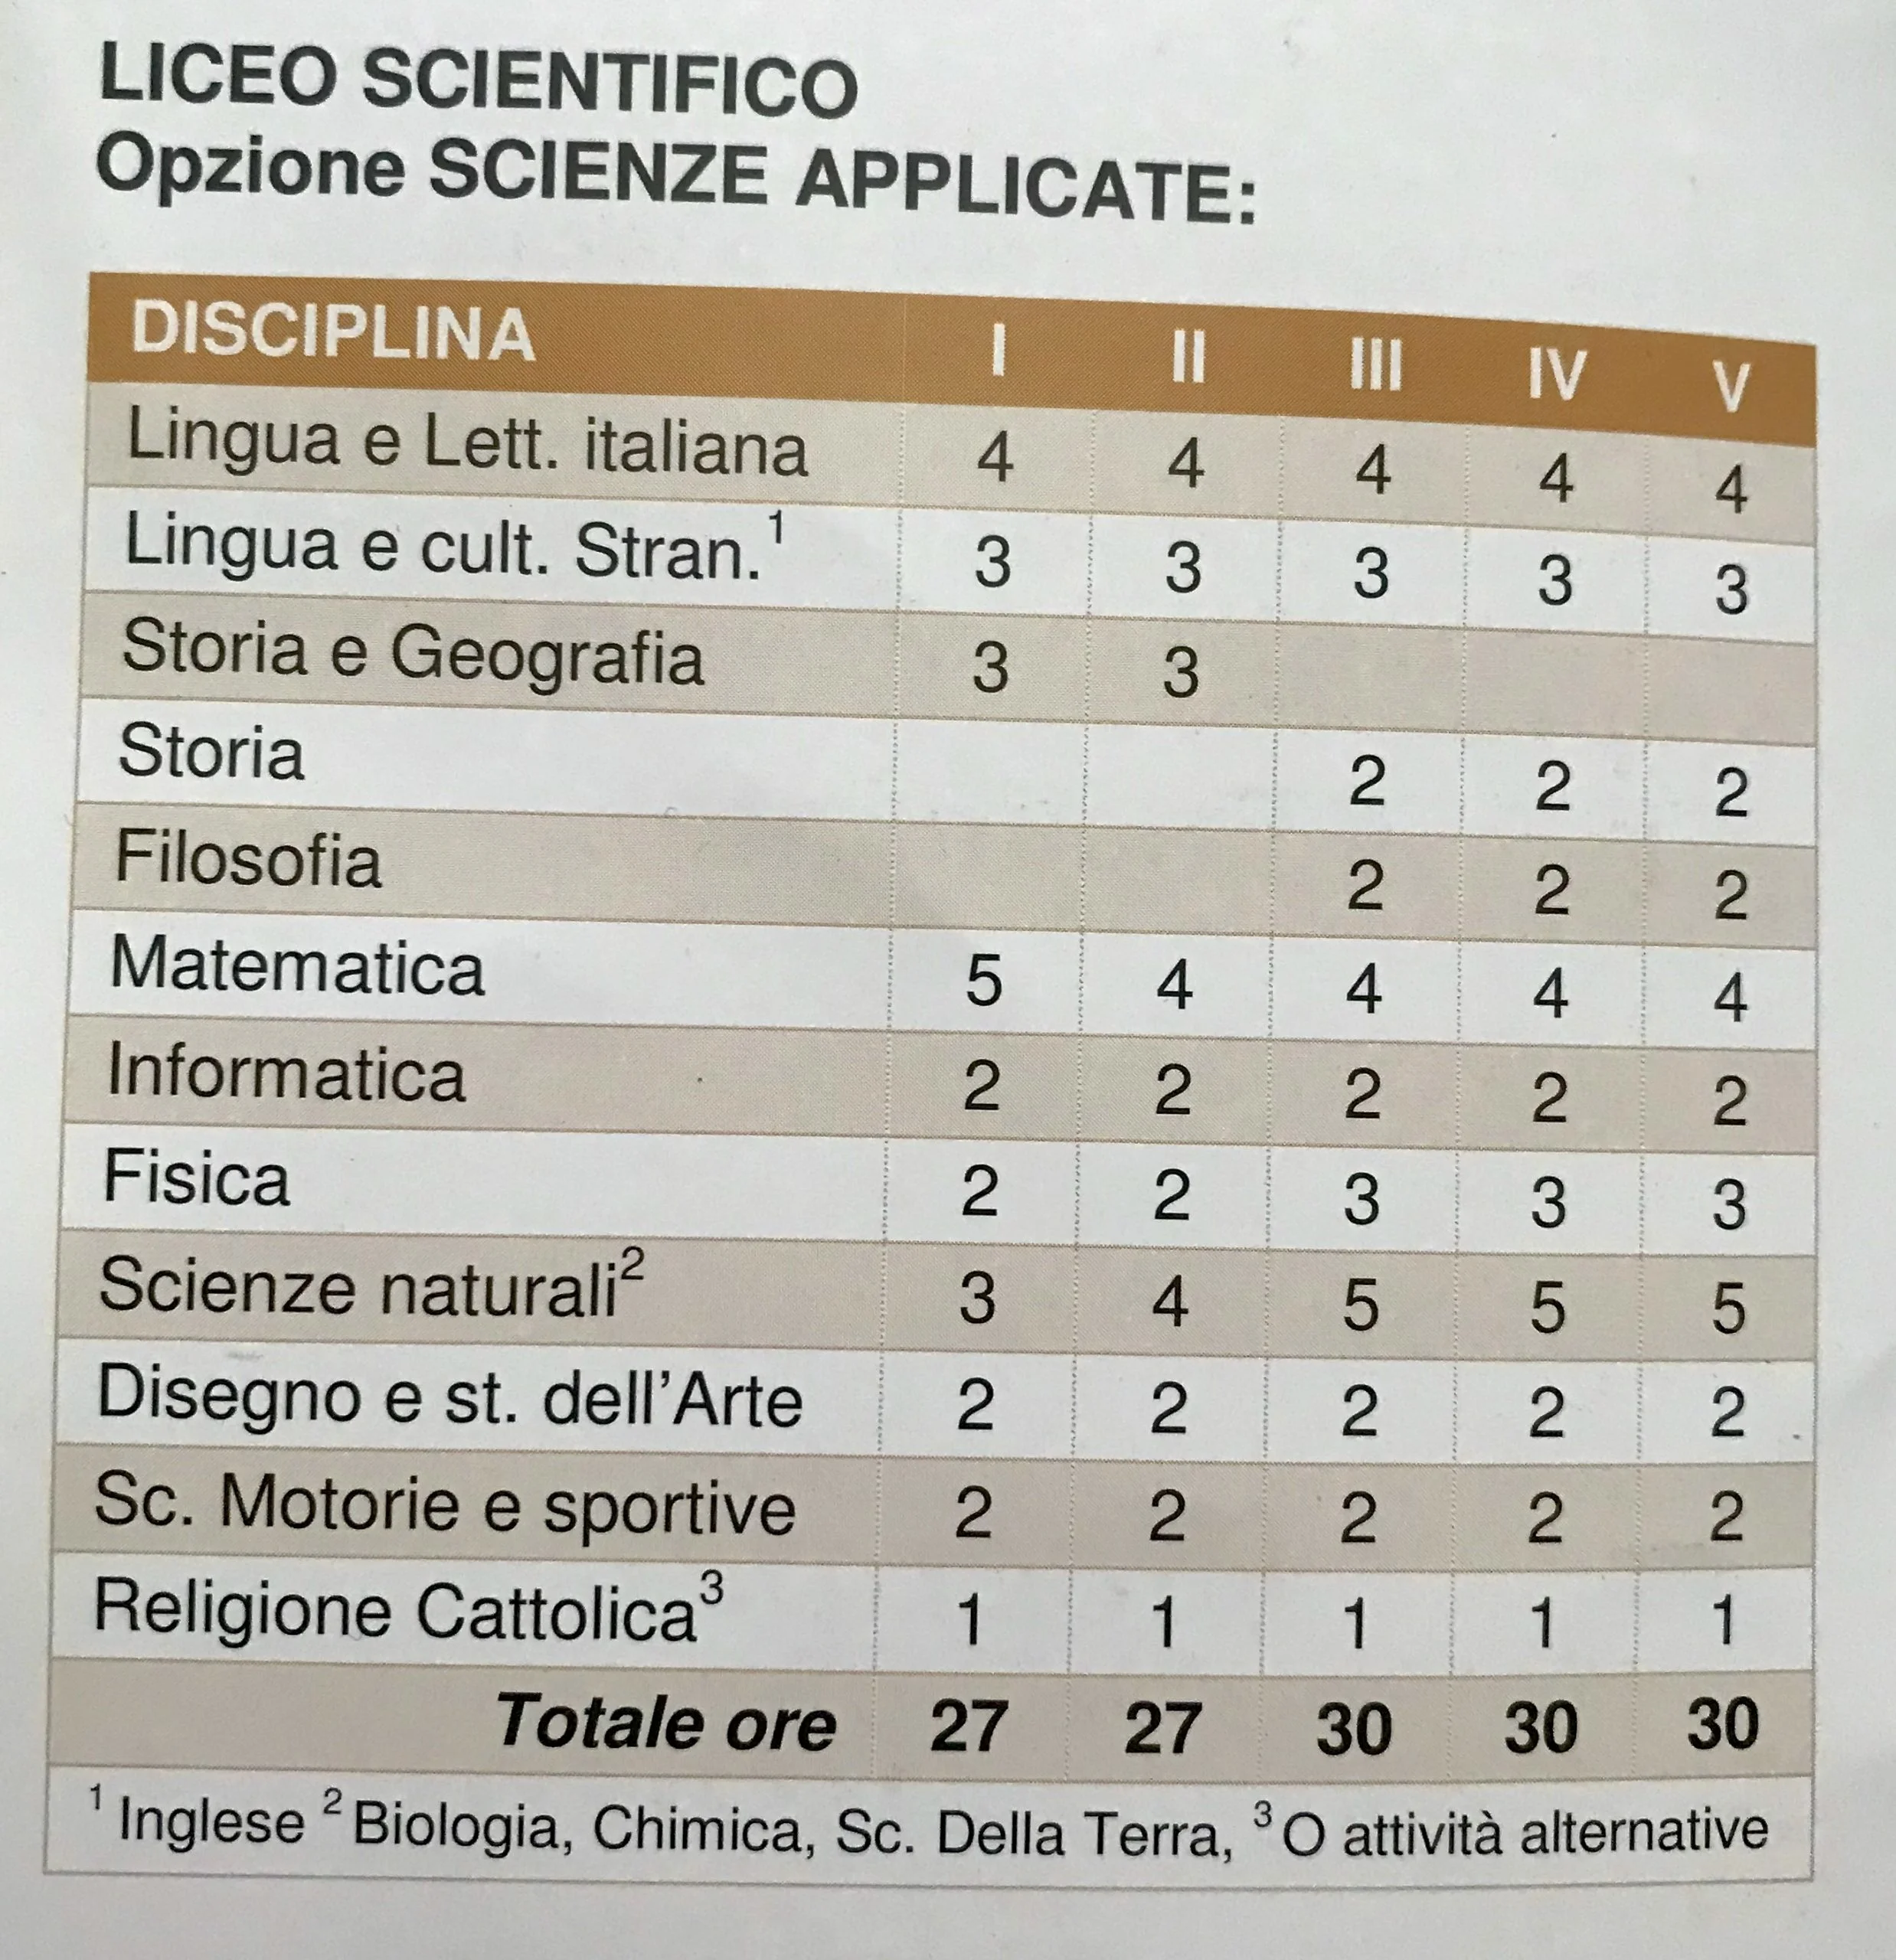 Scientifico e opzione Scienze Applicate, Liceo Renato Caccioppoli